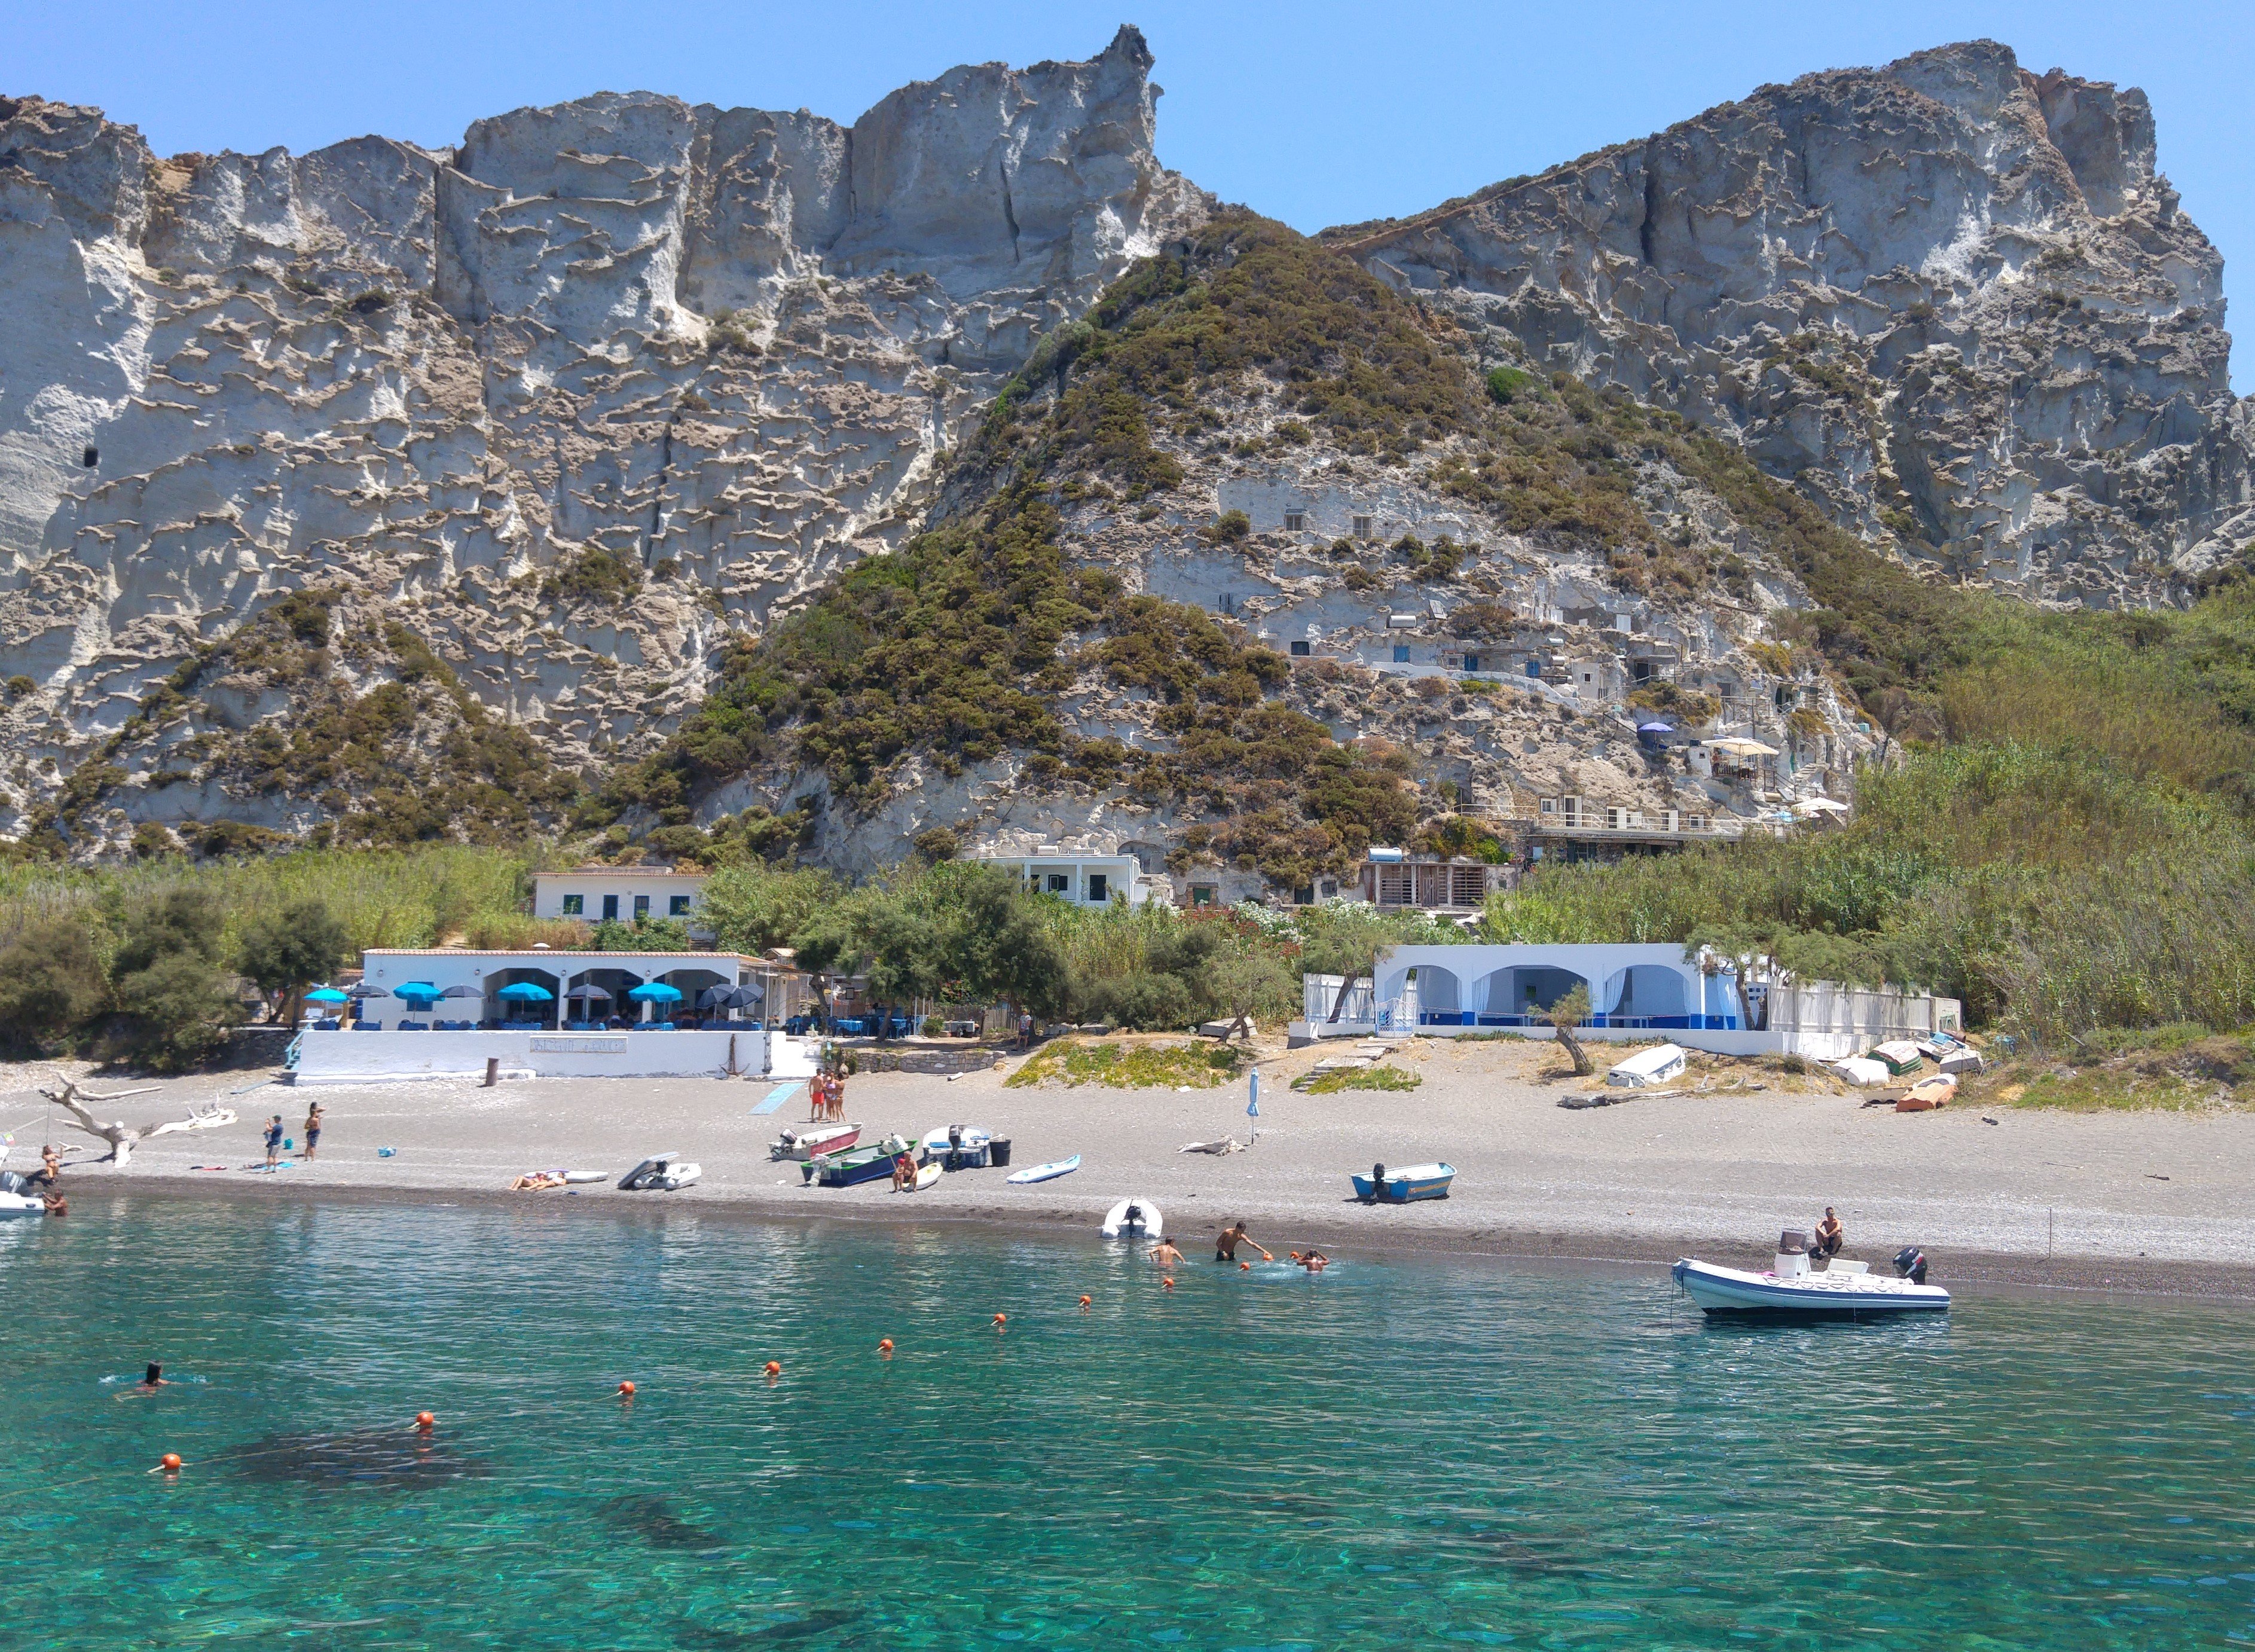 isola di Palmarola, isola deserta del Lazio, piccole barche ancorate sulla spiaggia e case sulla spiaggia